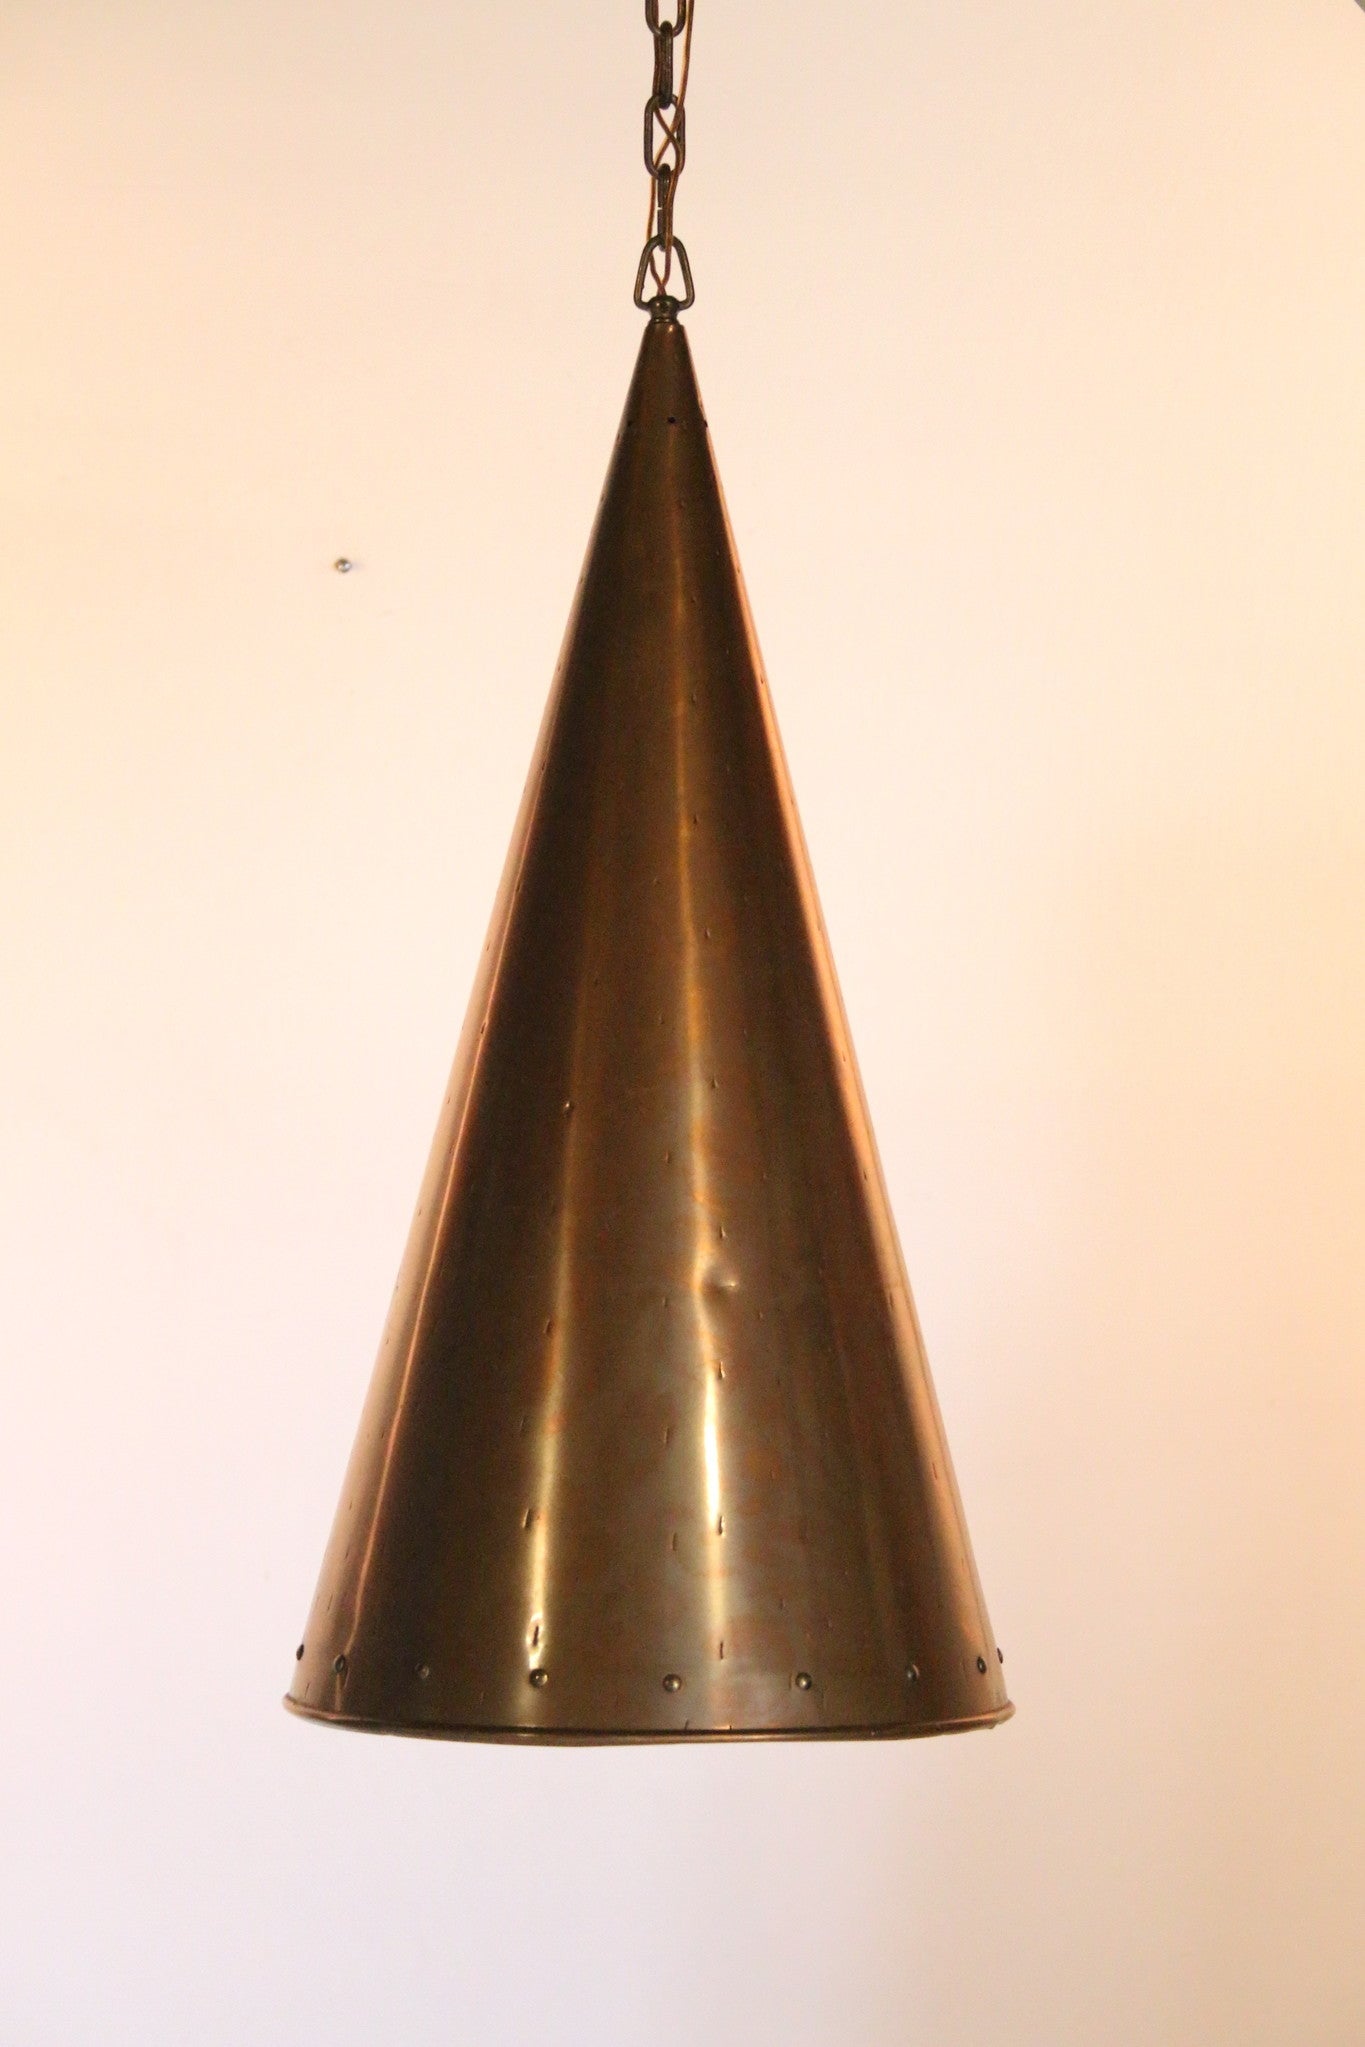 Deense met de hand gehamerde koperen hanglamp van E.S Horn Aalestrup, jaren 50 detail lampekap voorkant